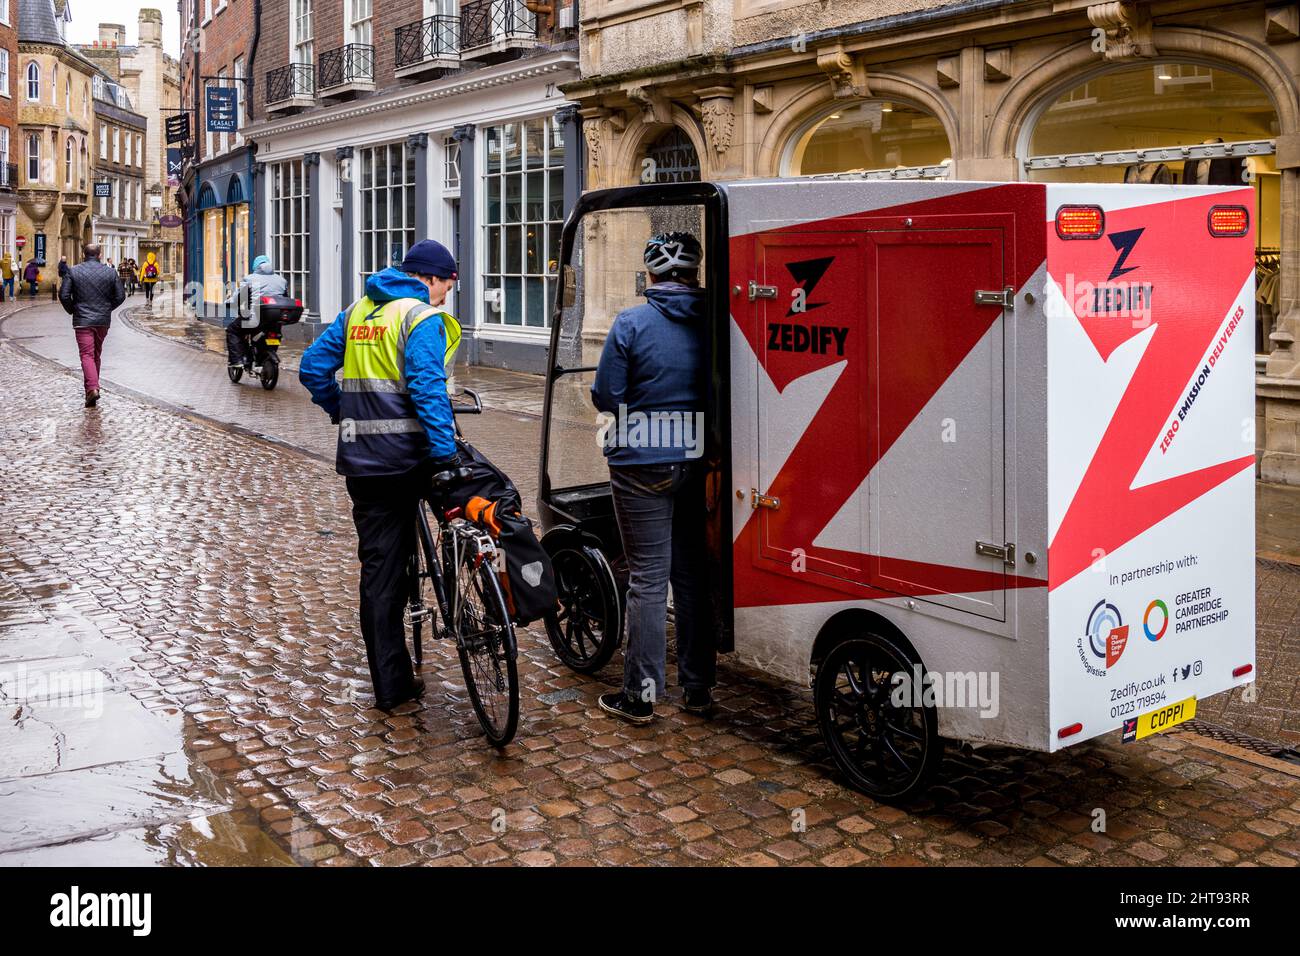 Una gran bicicleta eléctrica de entrega de carga de la compañía local de logística Zedify estacionada en Trinity St Central Cambridge. Soluciones de entrega ecológica. Foto de stock